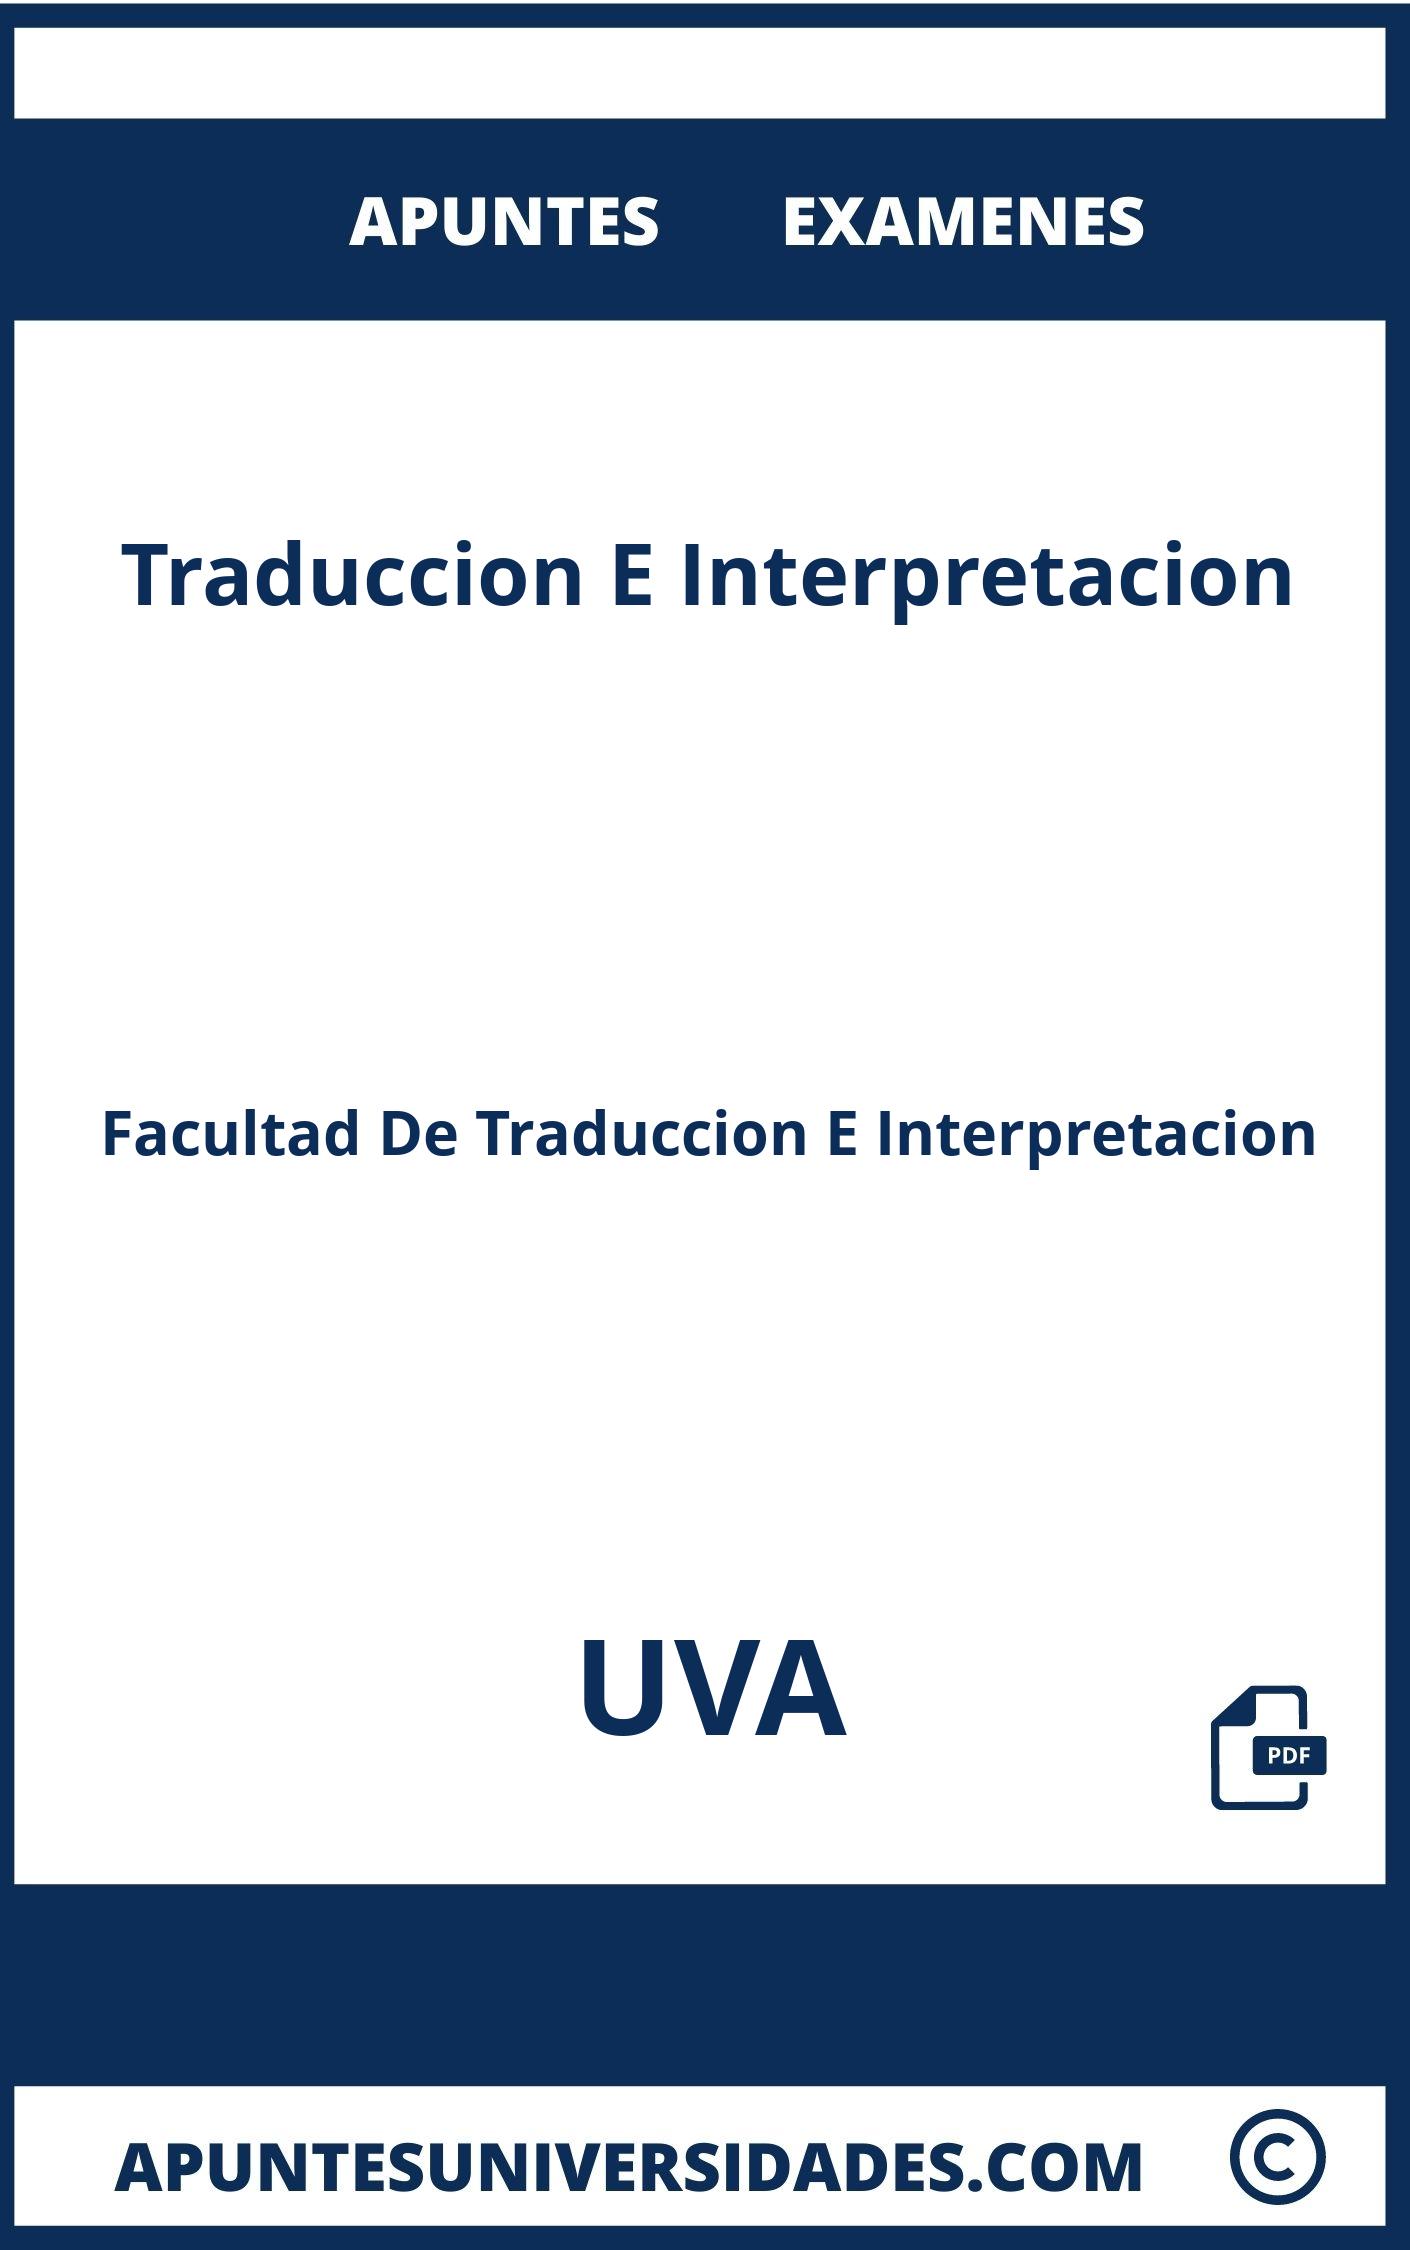 Apuntes Examenes Traduccion E Interpretacion UVA